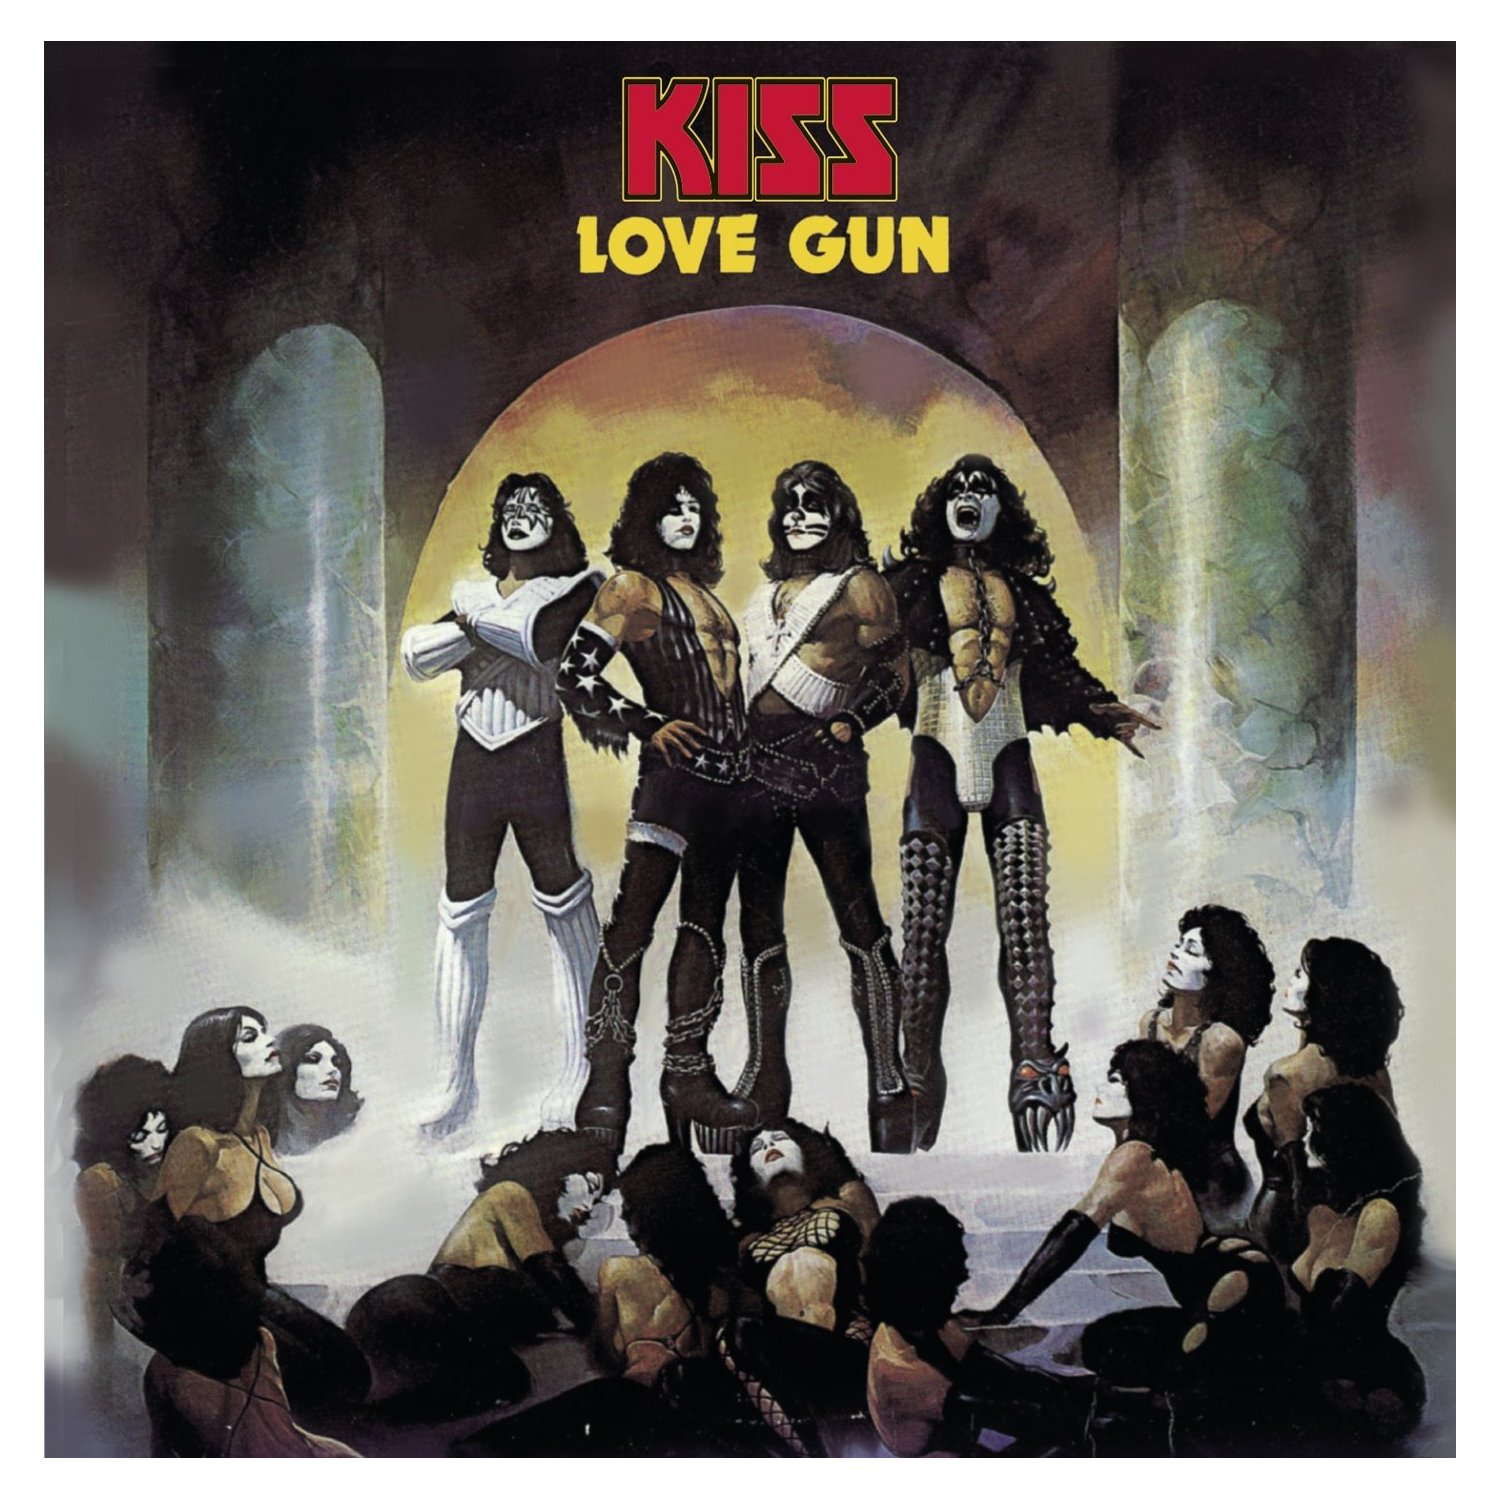 Welches war die erste Platte, die du gekauft hast?

Das war auf jedenfall ein 70s Kiss-Album. Das erste Album, das ich von me